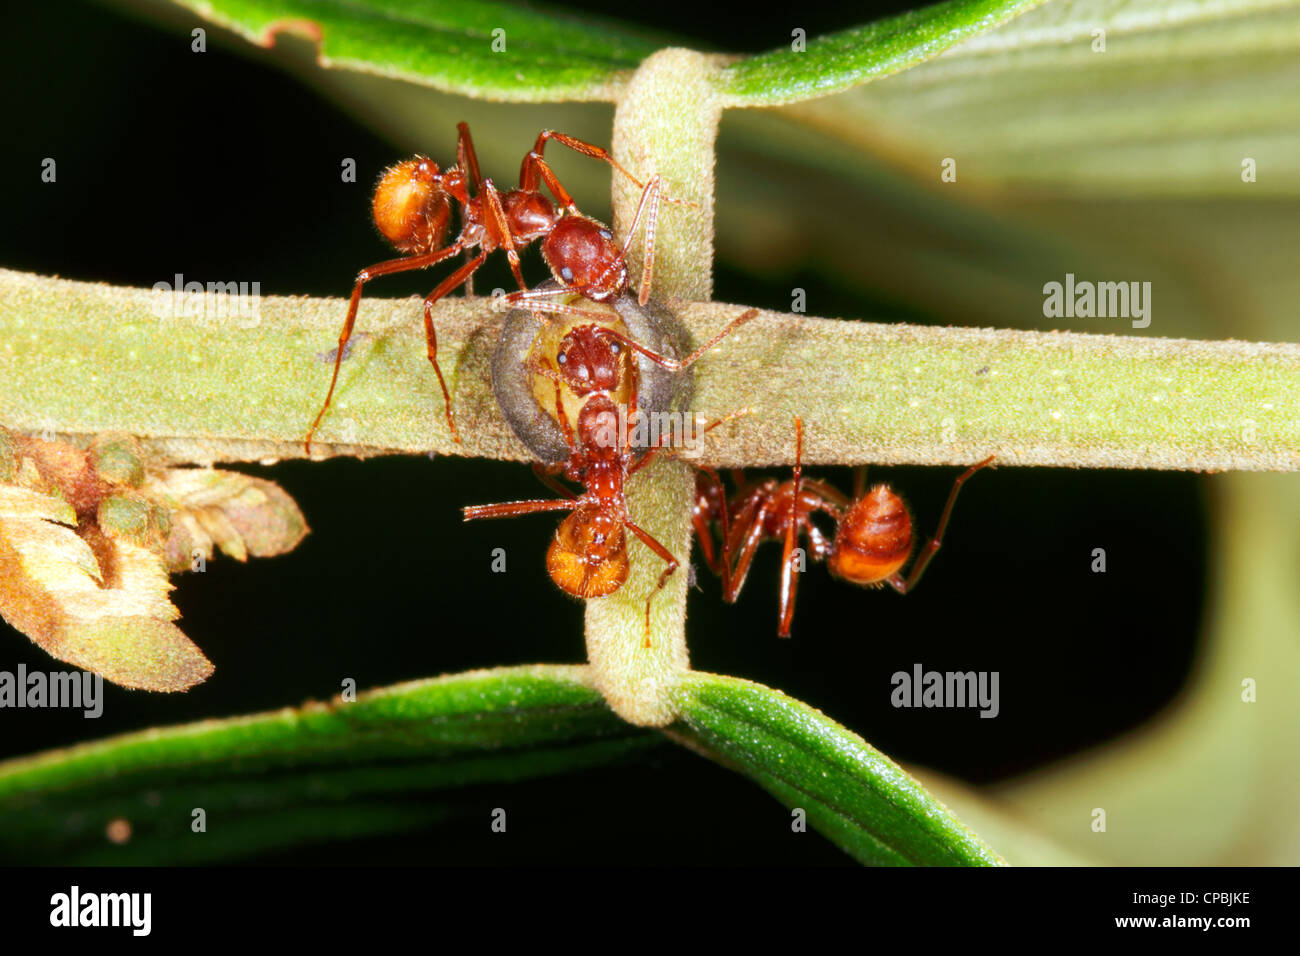 Ameisen sammeln Nektar aus einer extra floralen Nektarien auf einem Regenwald Blatt Blattstiel Stockfoto